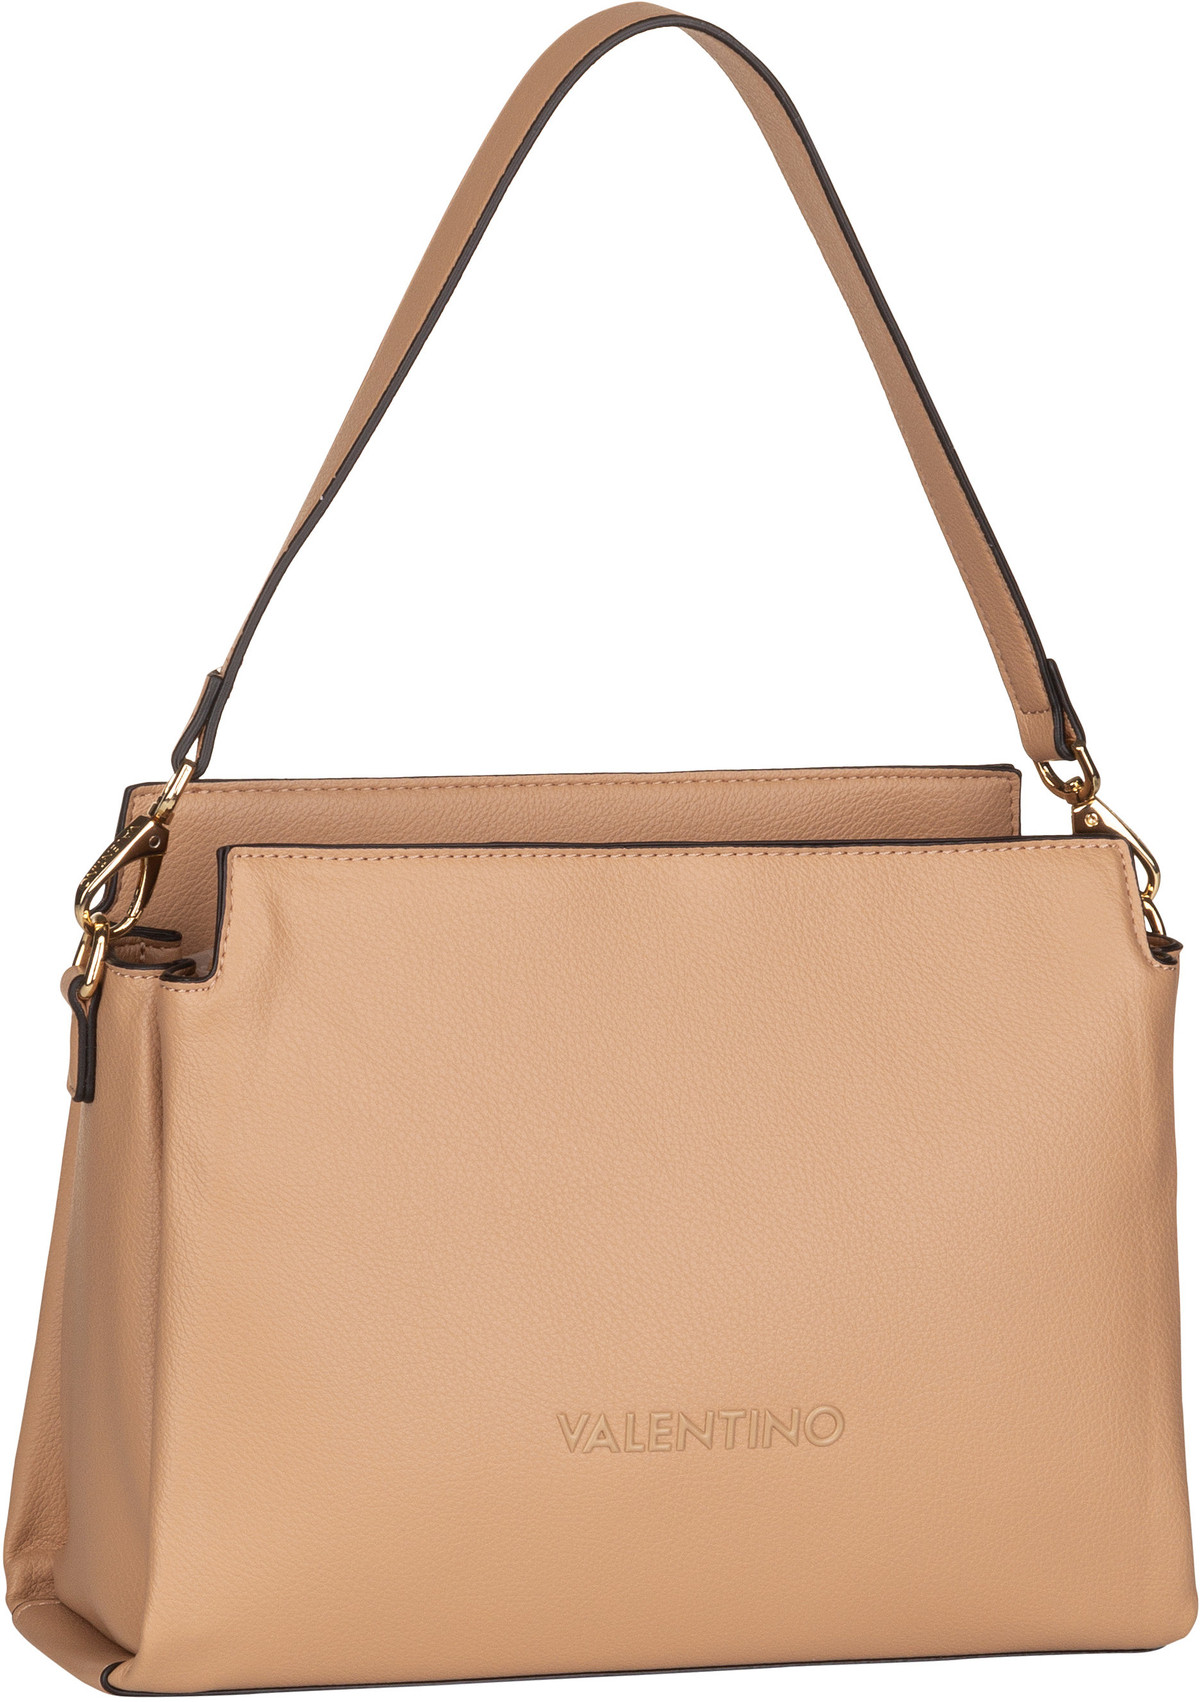 Valentino Manhattan RE W06  in Beige (8.4 Liter), Handtasche